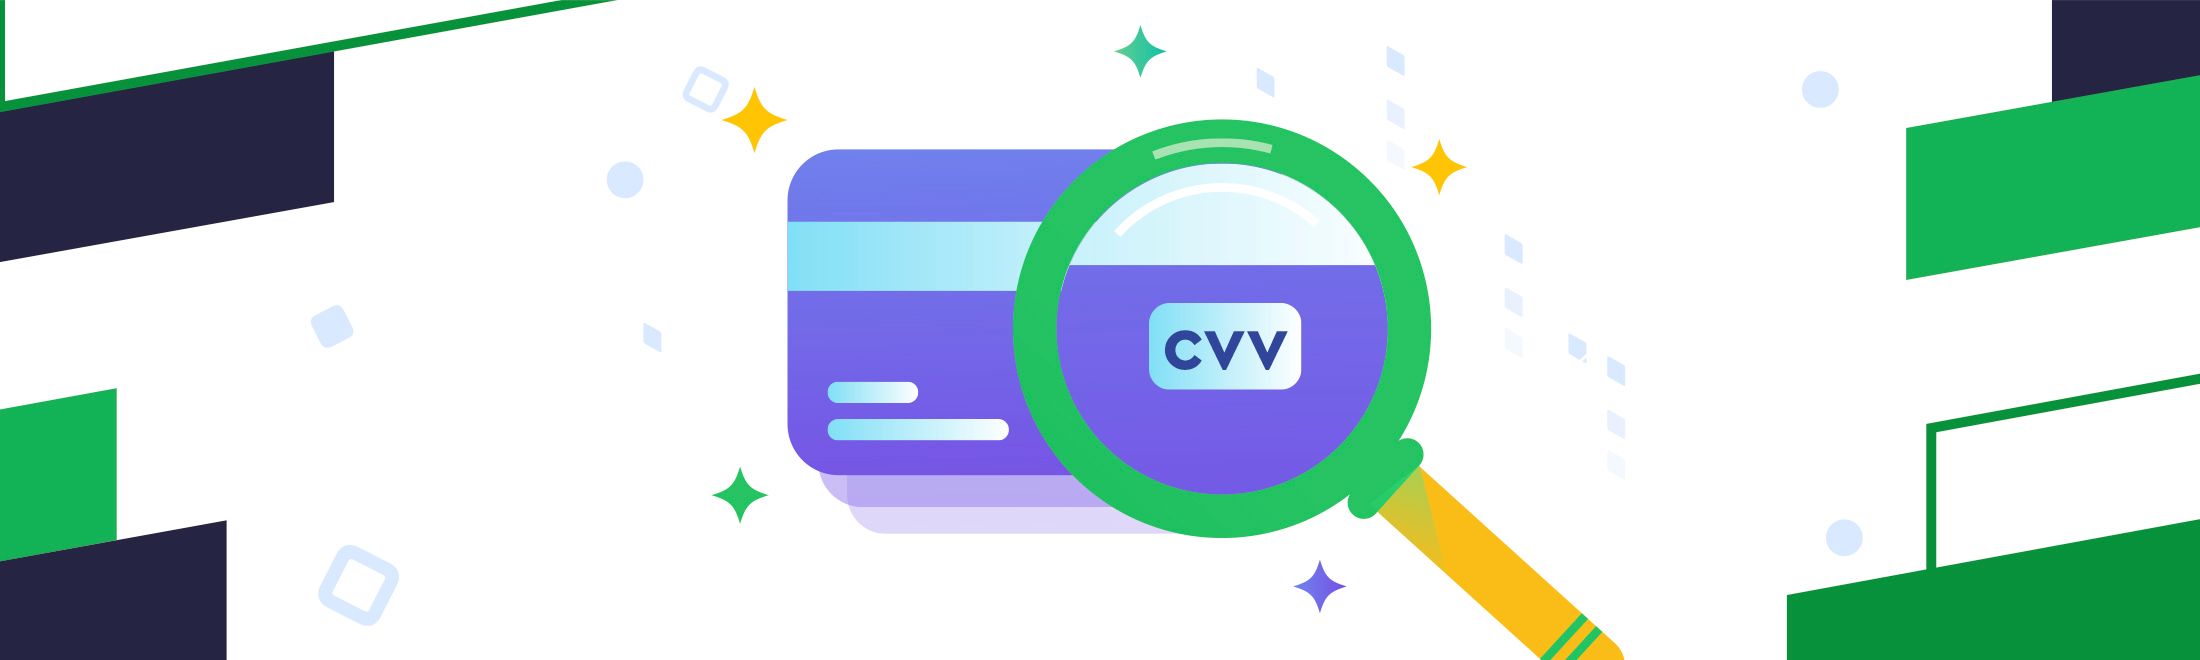 Що таке CVV / CVC код на банківській картці і де він знаходиться?